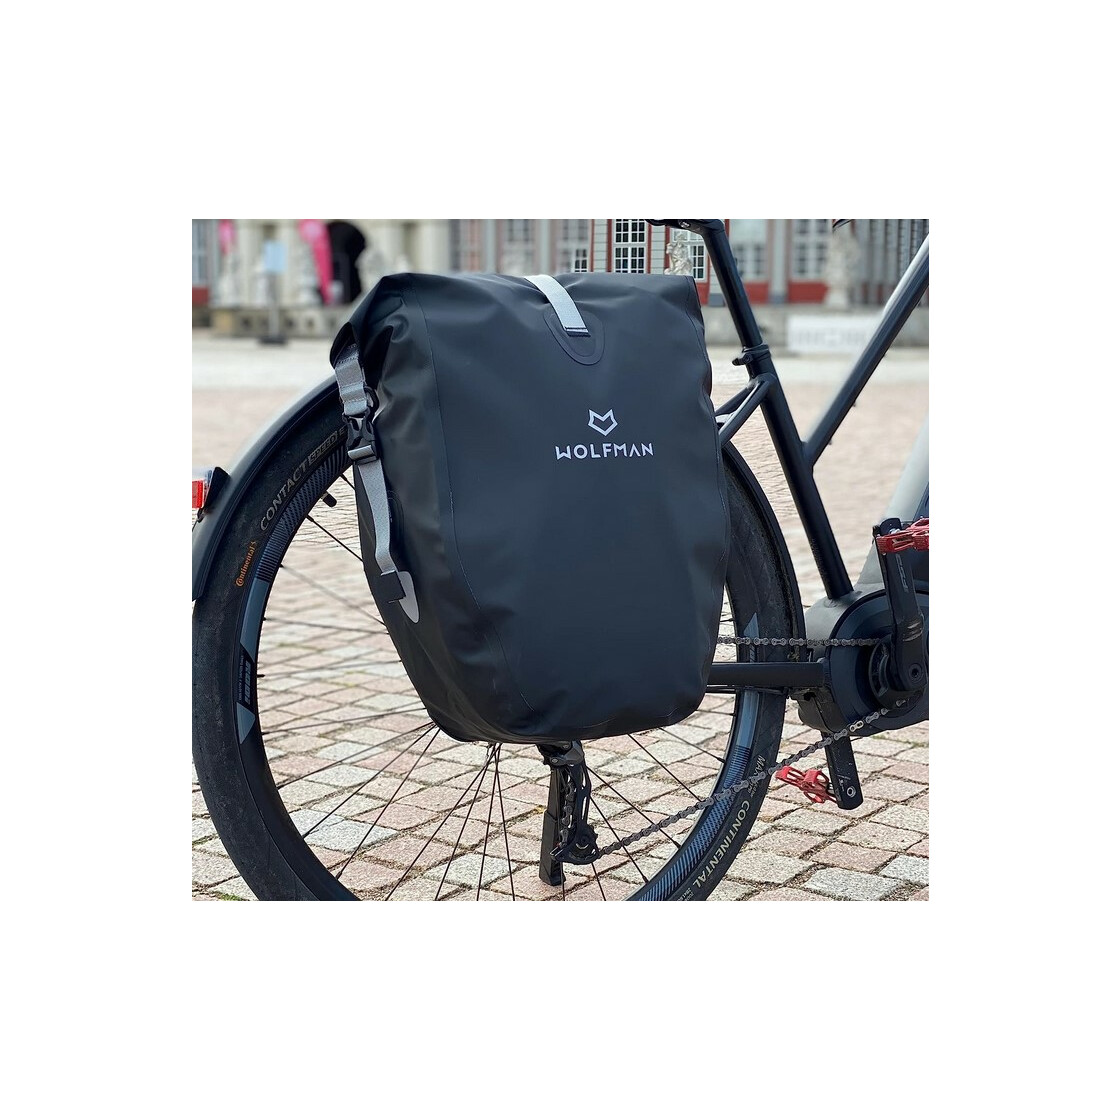 Wolfman 2in1 Fahrradtasche 28L Flexibles Volumen - Gepäckträgertasche -  beschlagswelt.de - Fensterbeschläge und Fensterersatzteile günstig online  bestellen, 59,99 €